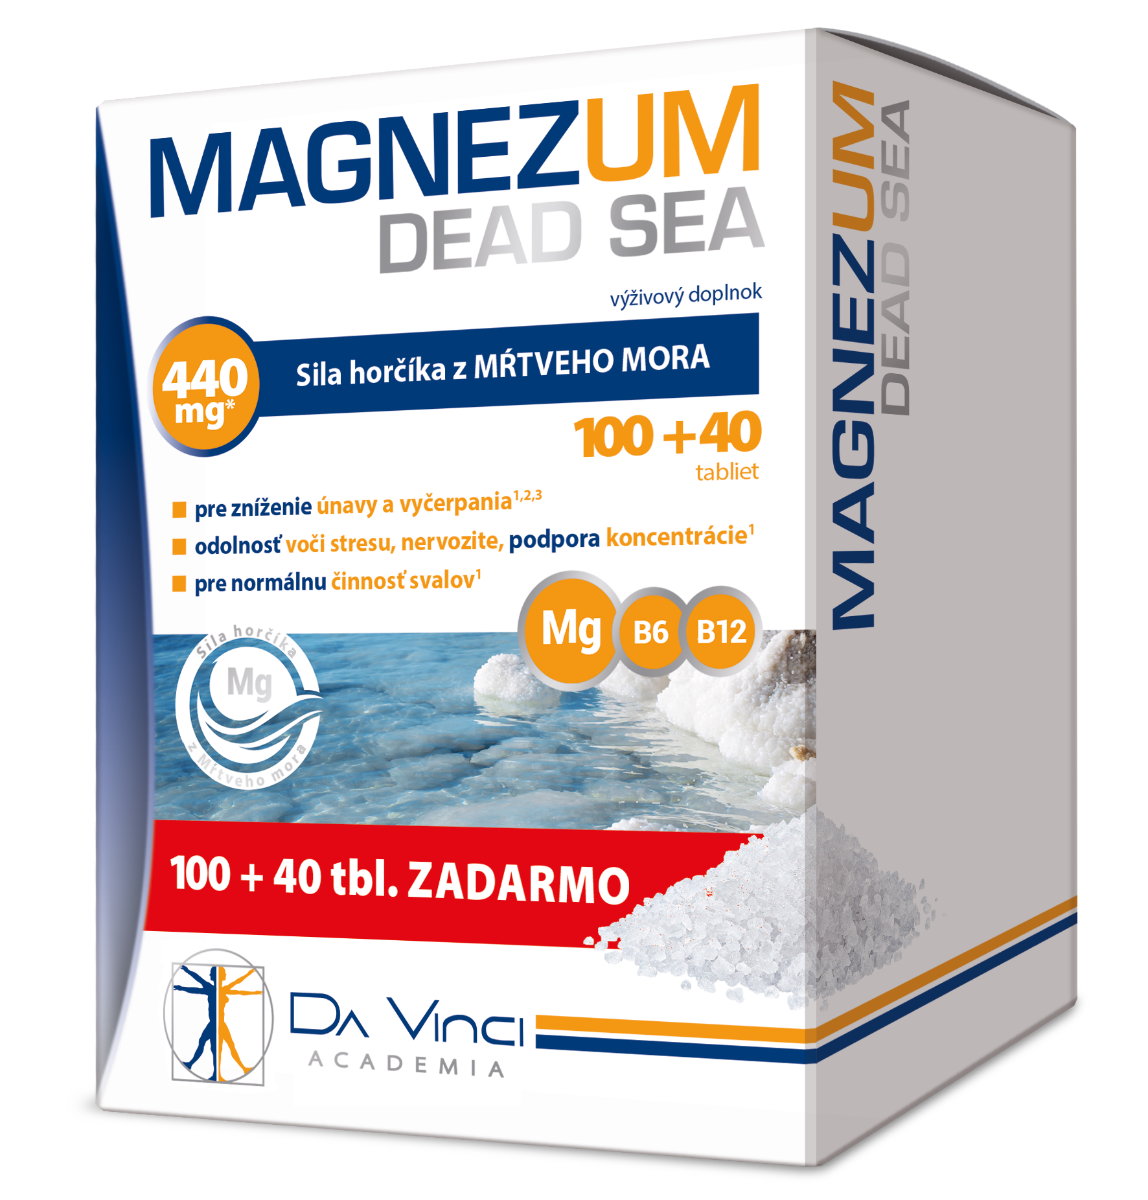 Magnezum Dead Sea - DA VINCI 10040 tbl. zadarmo